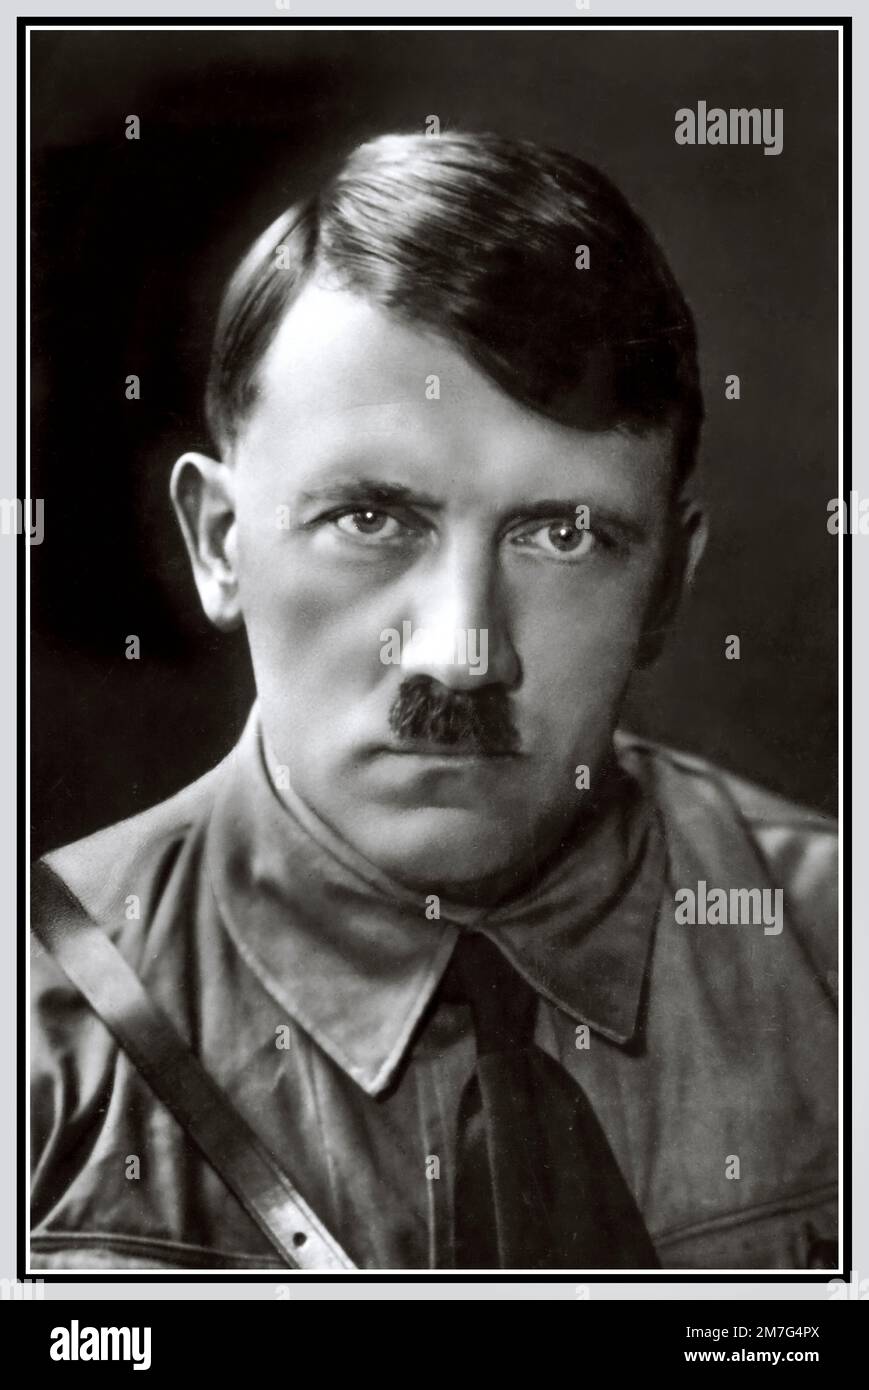 Adolf Hitler portrait dans NSDAP Sturmabteilung l'uniforme nazi dans les années 1930 d'avant-guerre photographié par Hoffmann pour son livre Mein Kampf Banque D'Images